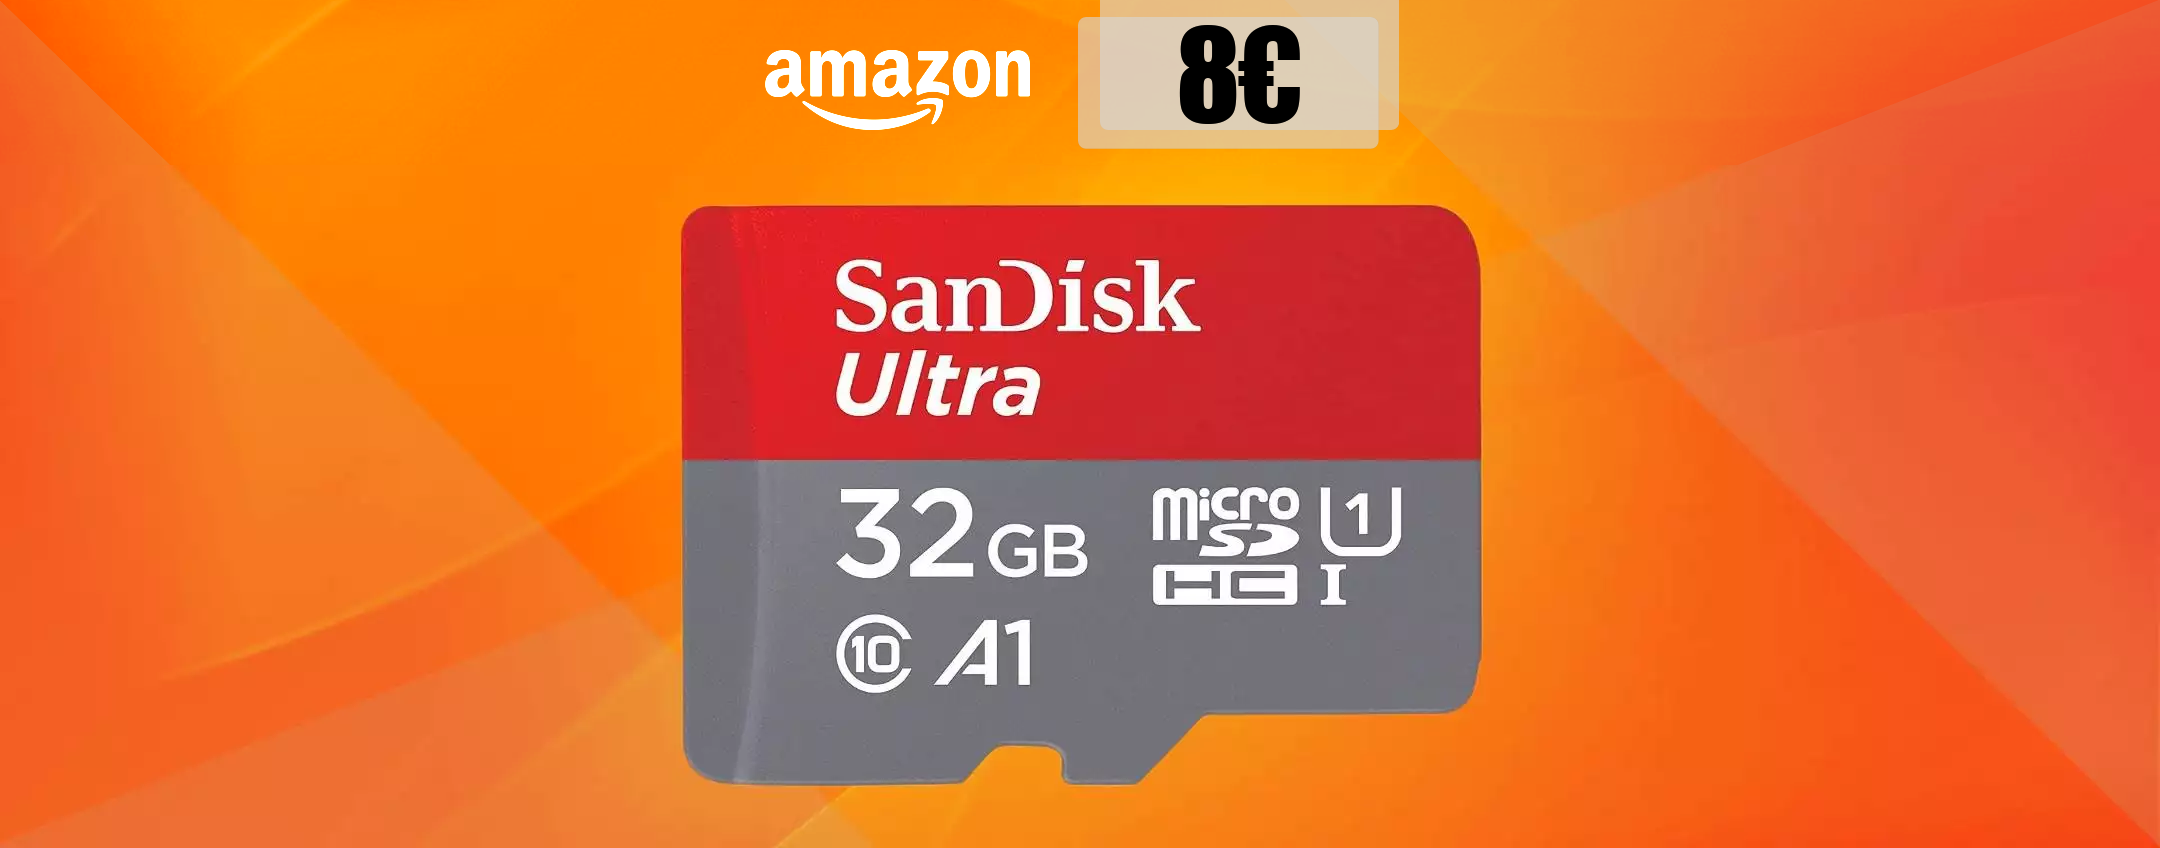 MicroSD 32GB, velocissima e robusta: la MIGLIORE che trovi con 8€